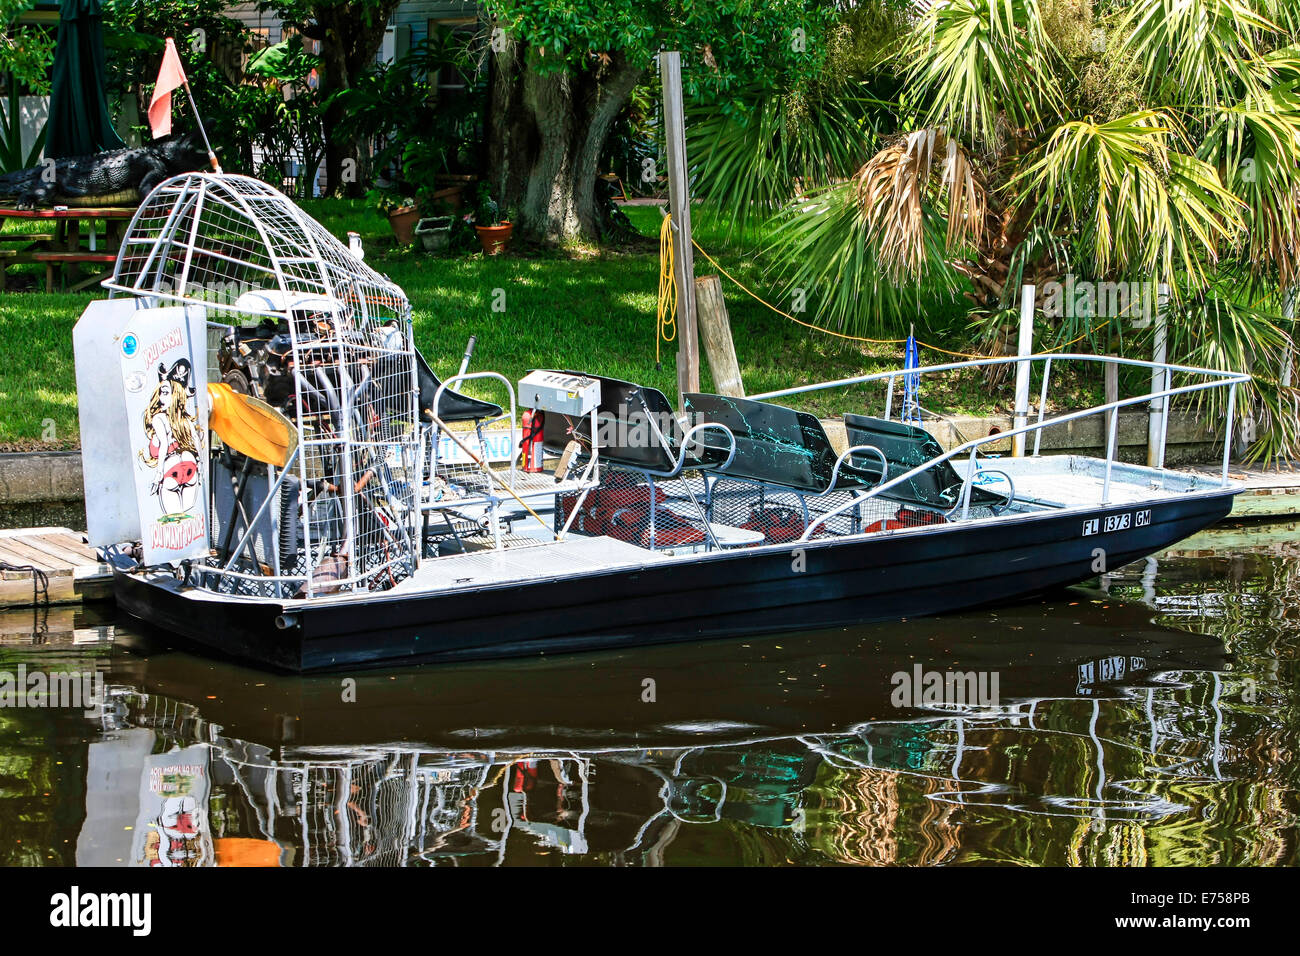 Florida-Luftboot - Flachboden Boot angetrieben durch einen starken Motor  und propeller Stockfotografie - Alamy